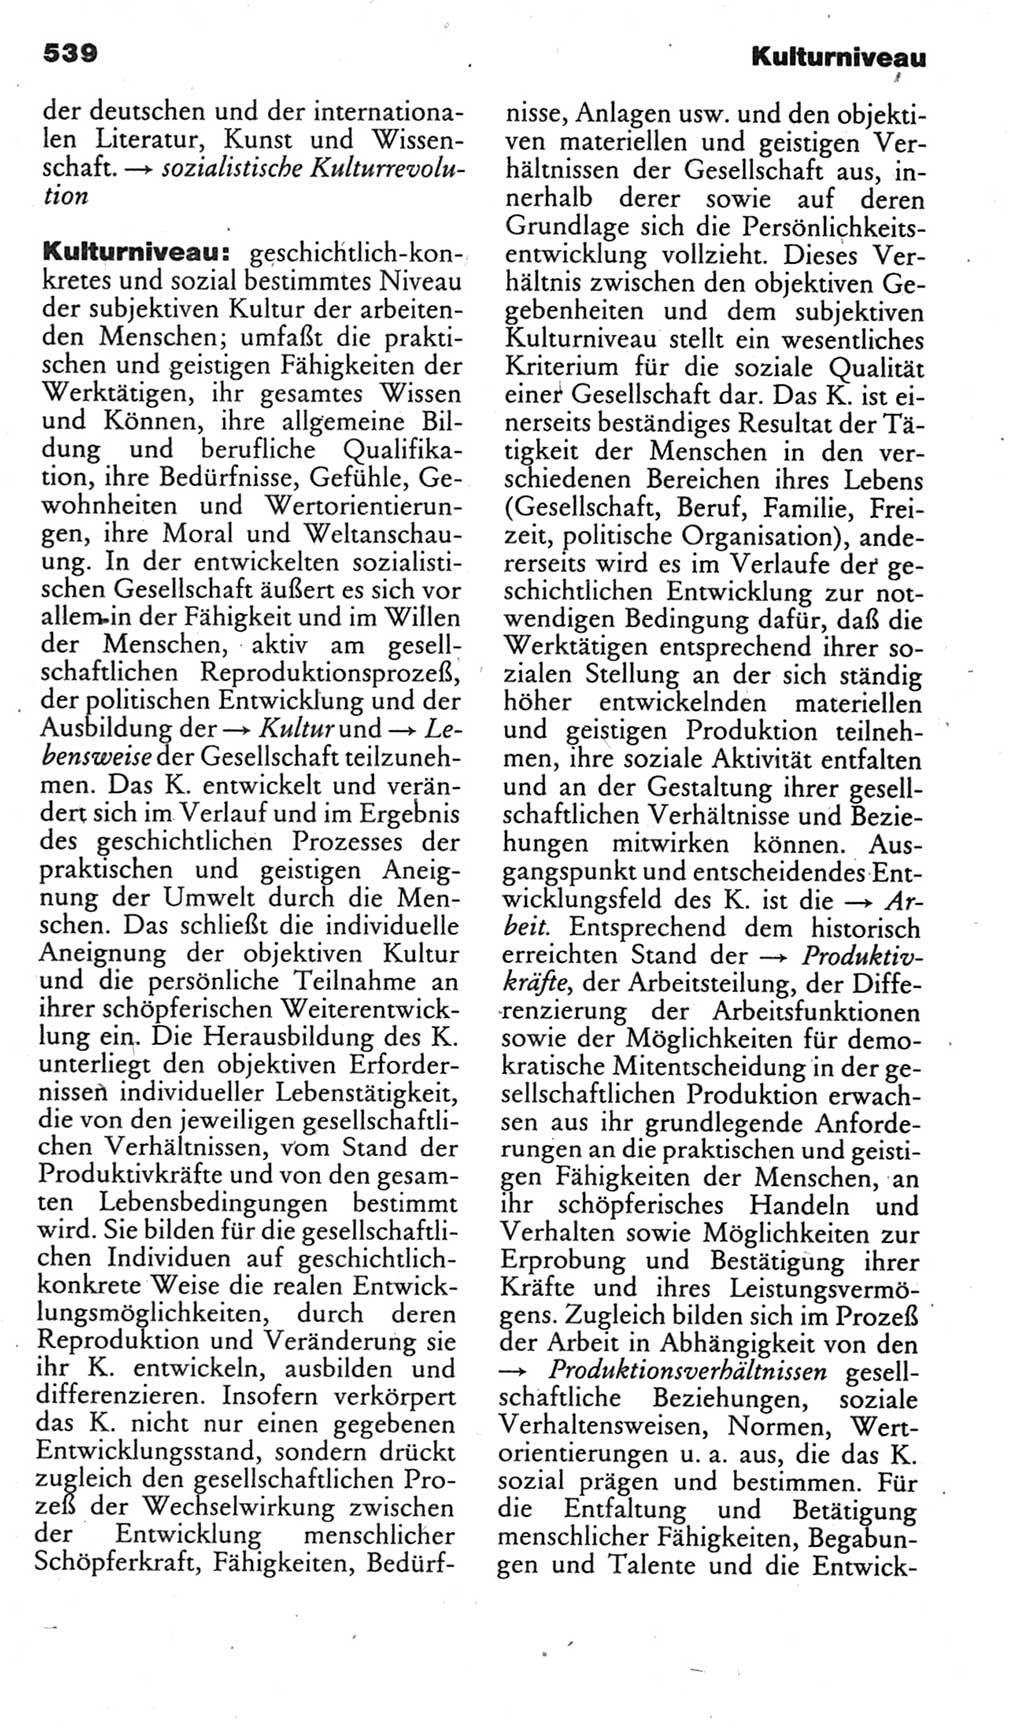 Kleines politisches Wörterbuch [Deutsche Demokratische Republik (DDR)] 1985, Seite 539 (Kl. pol. Wb. DDR 1985, S. 539)